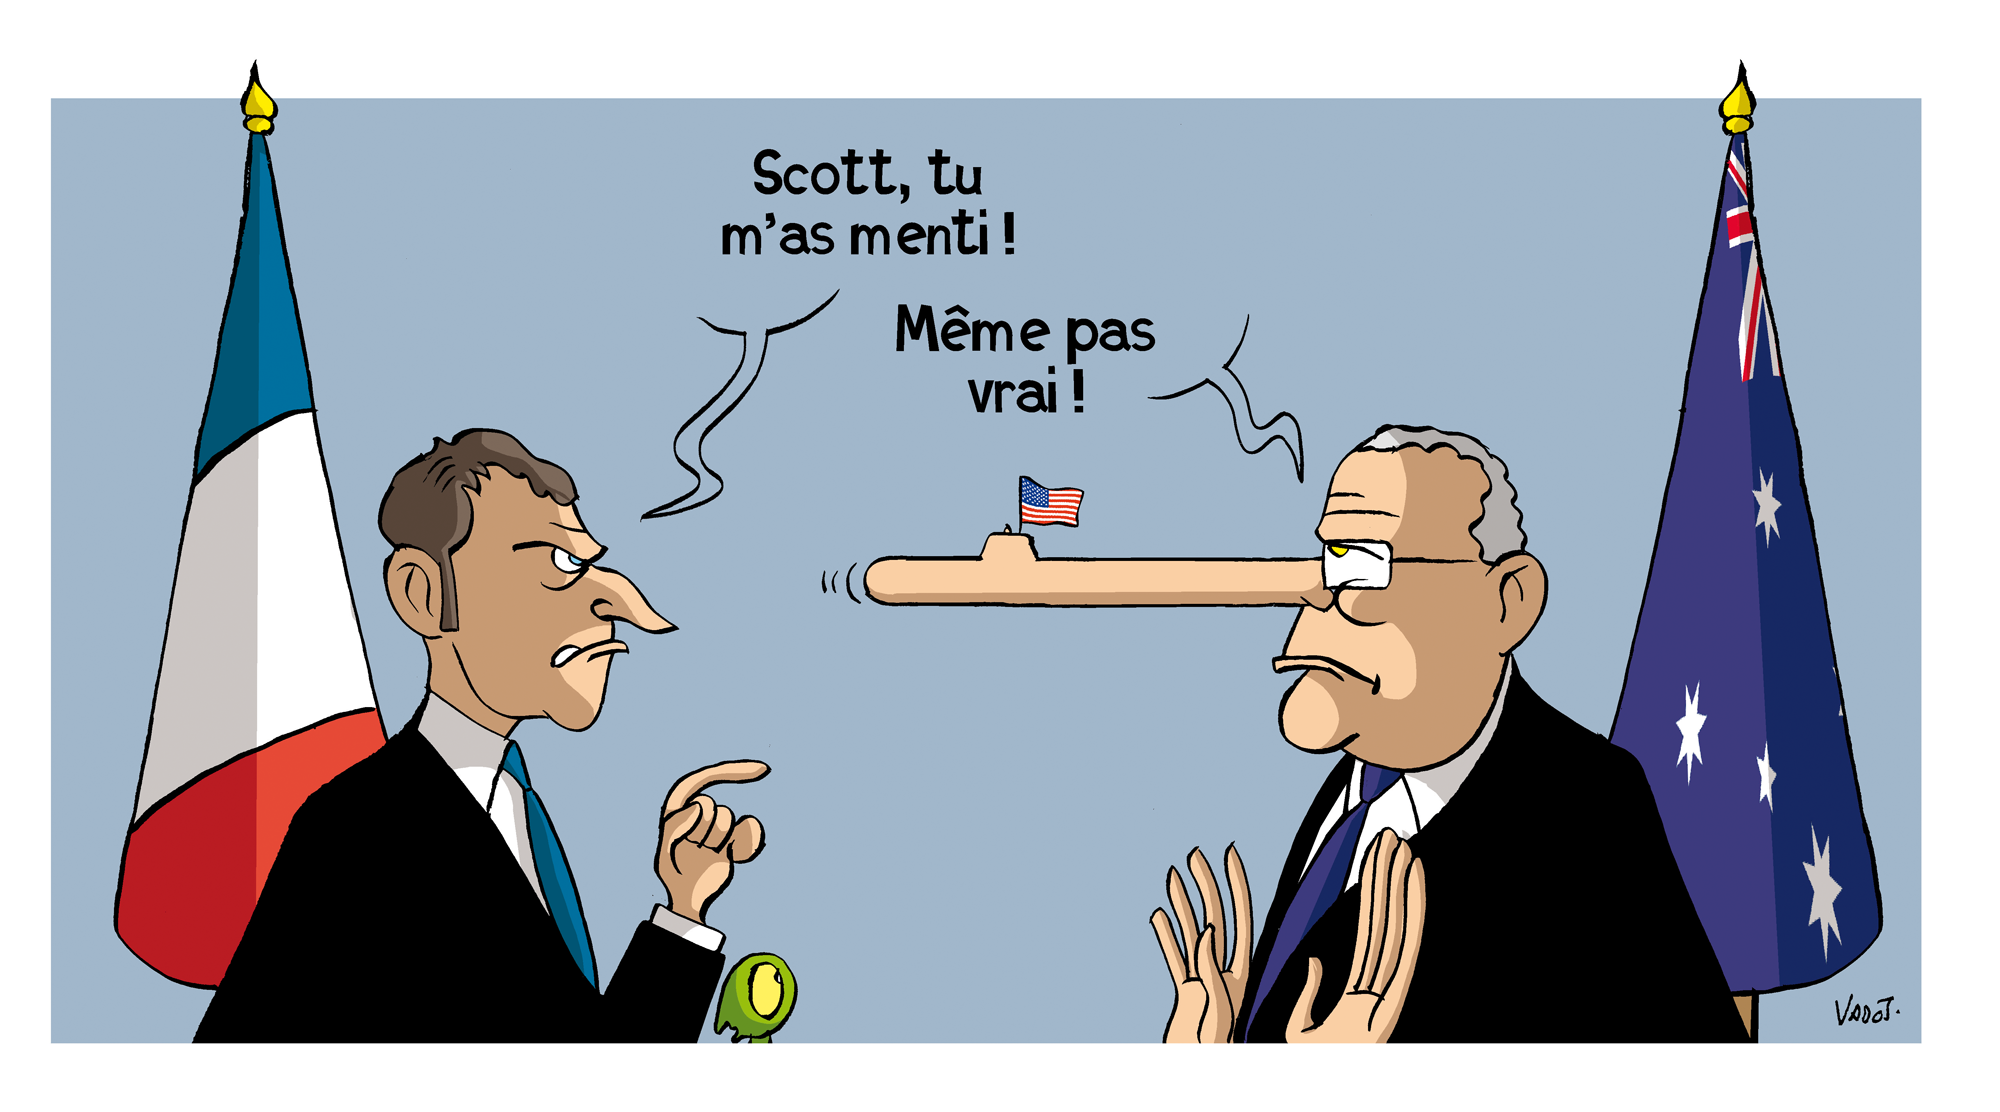 Les tensions entre la France et L'Australie ne sont pas apaisées dans la crise des sous-marins, Emmanuel Macron accusant Scott Morrison de lui avoir menti, ce que dément le Premier ministre australien.